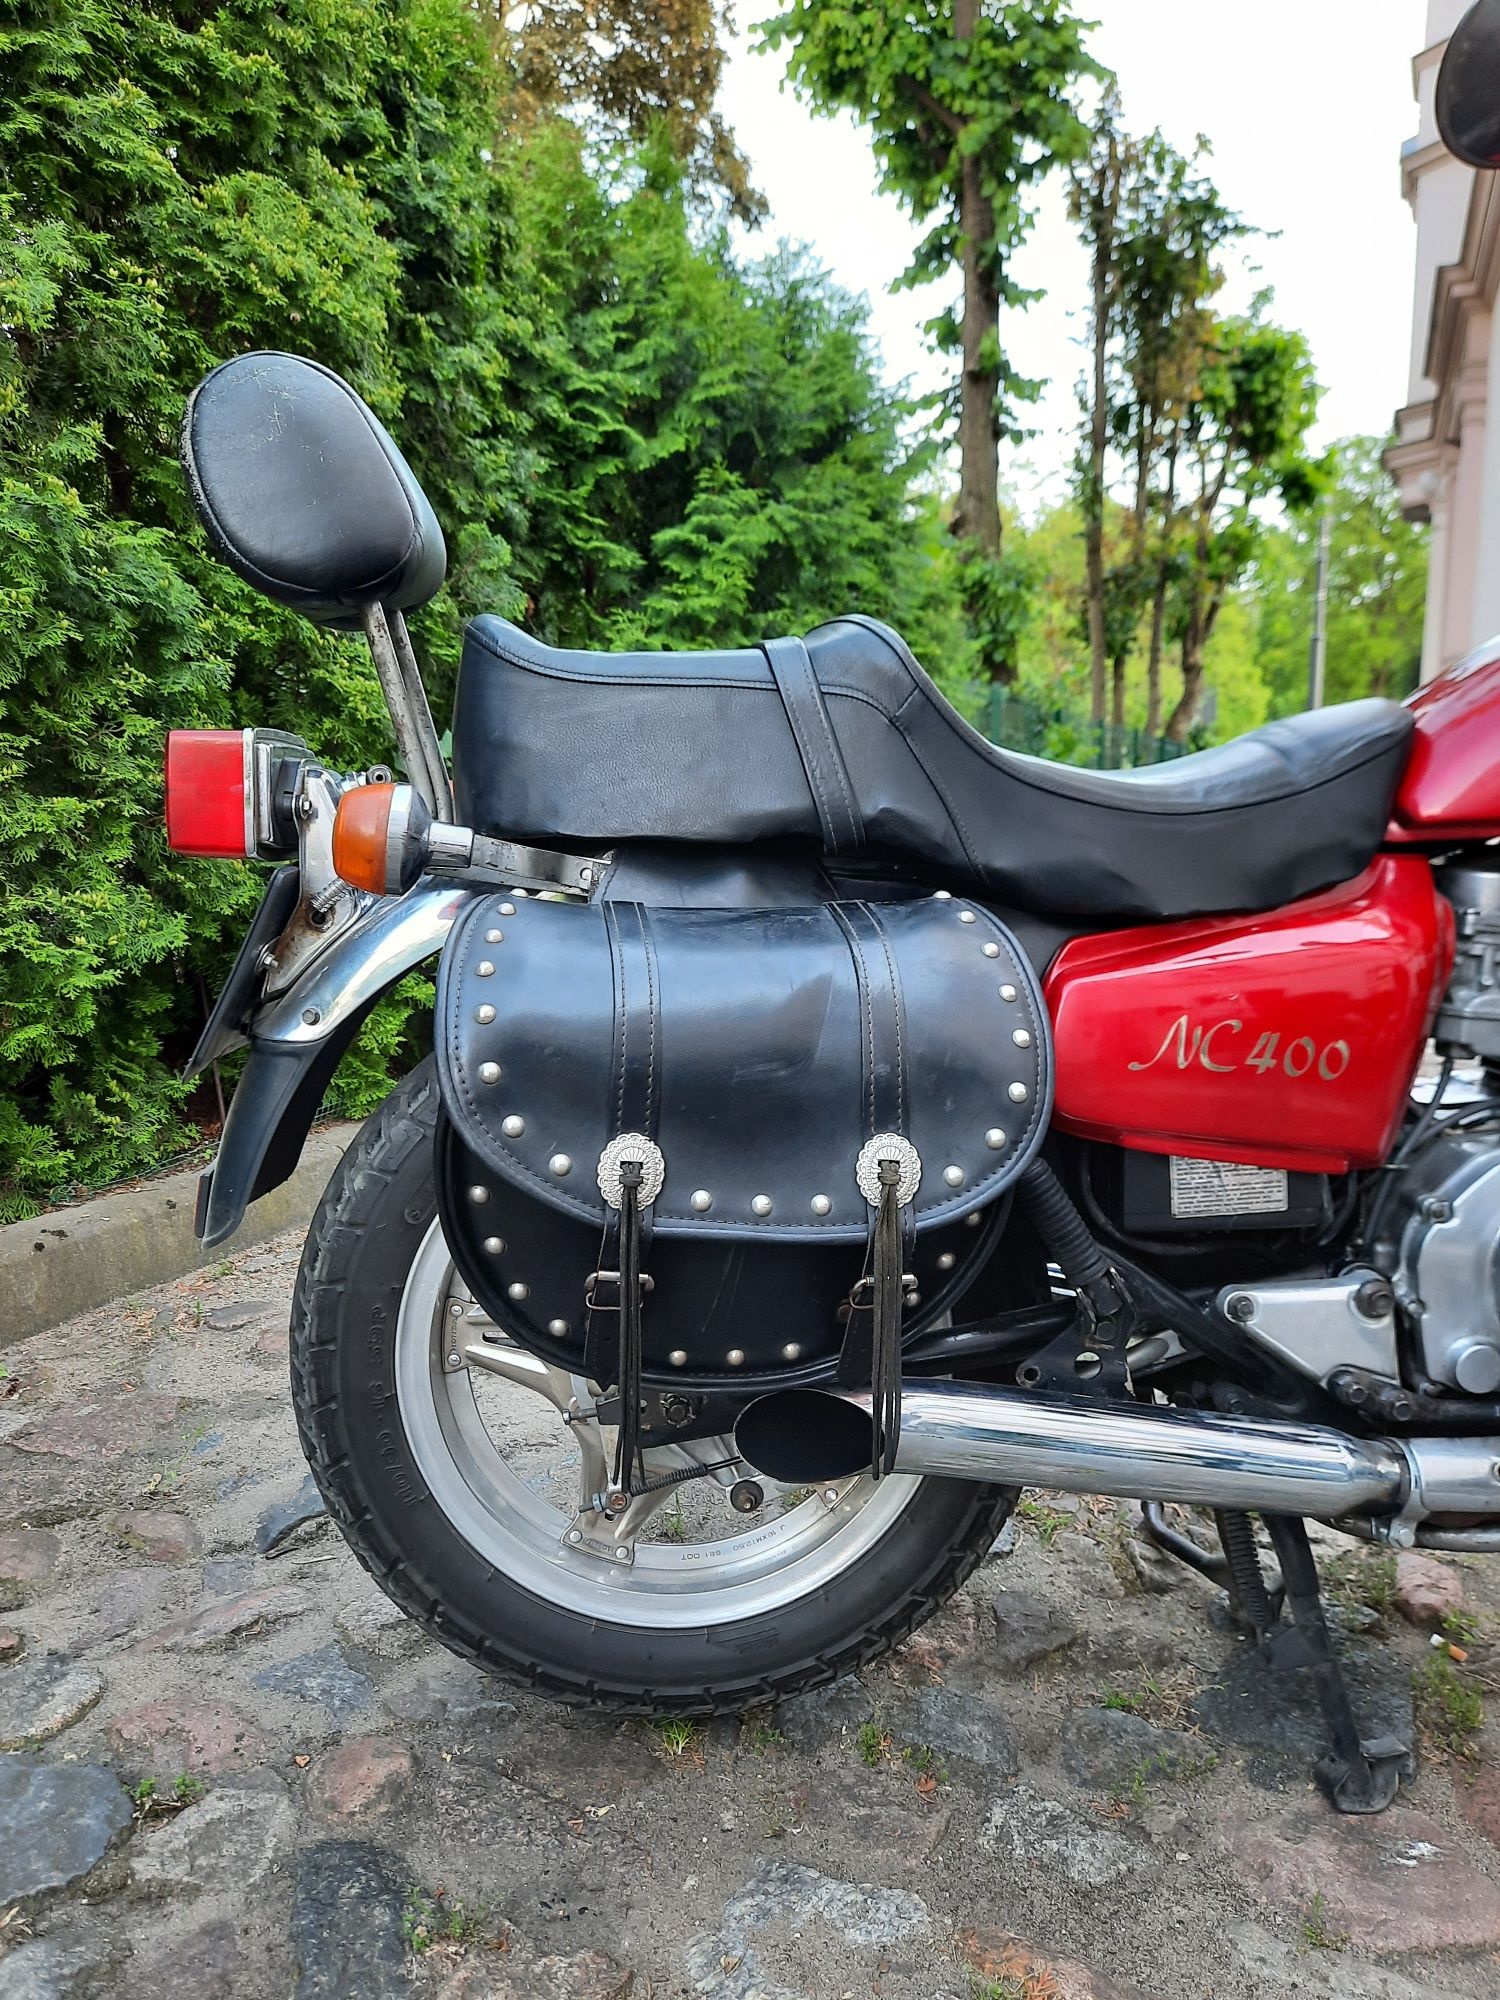 Motocykl HONDA NC 400 - brak iskry